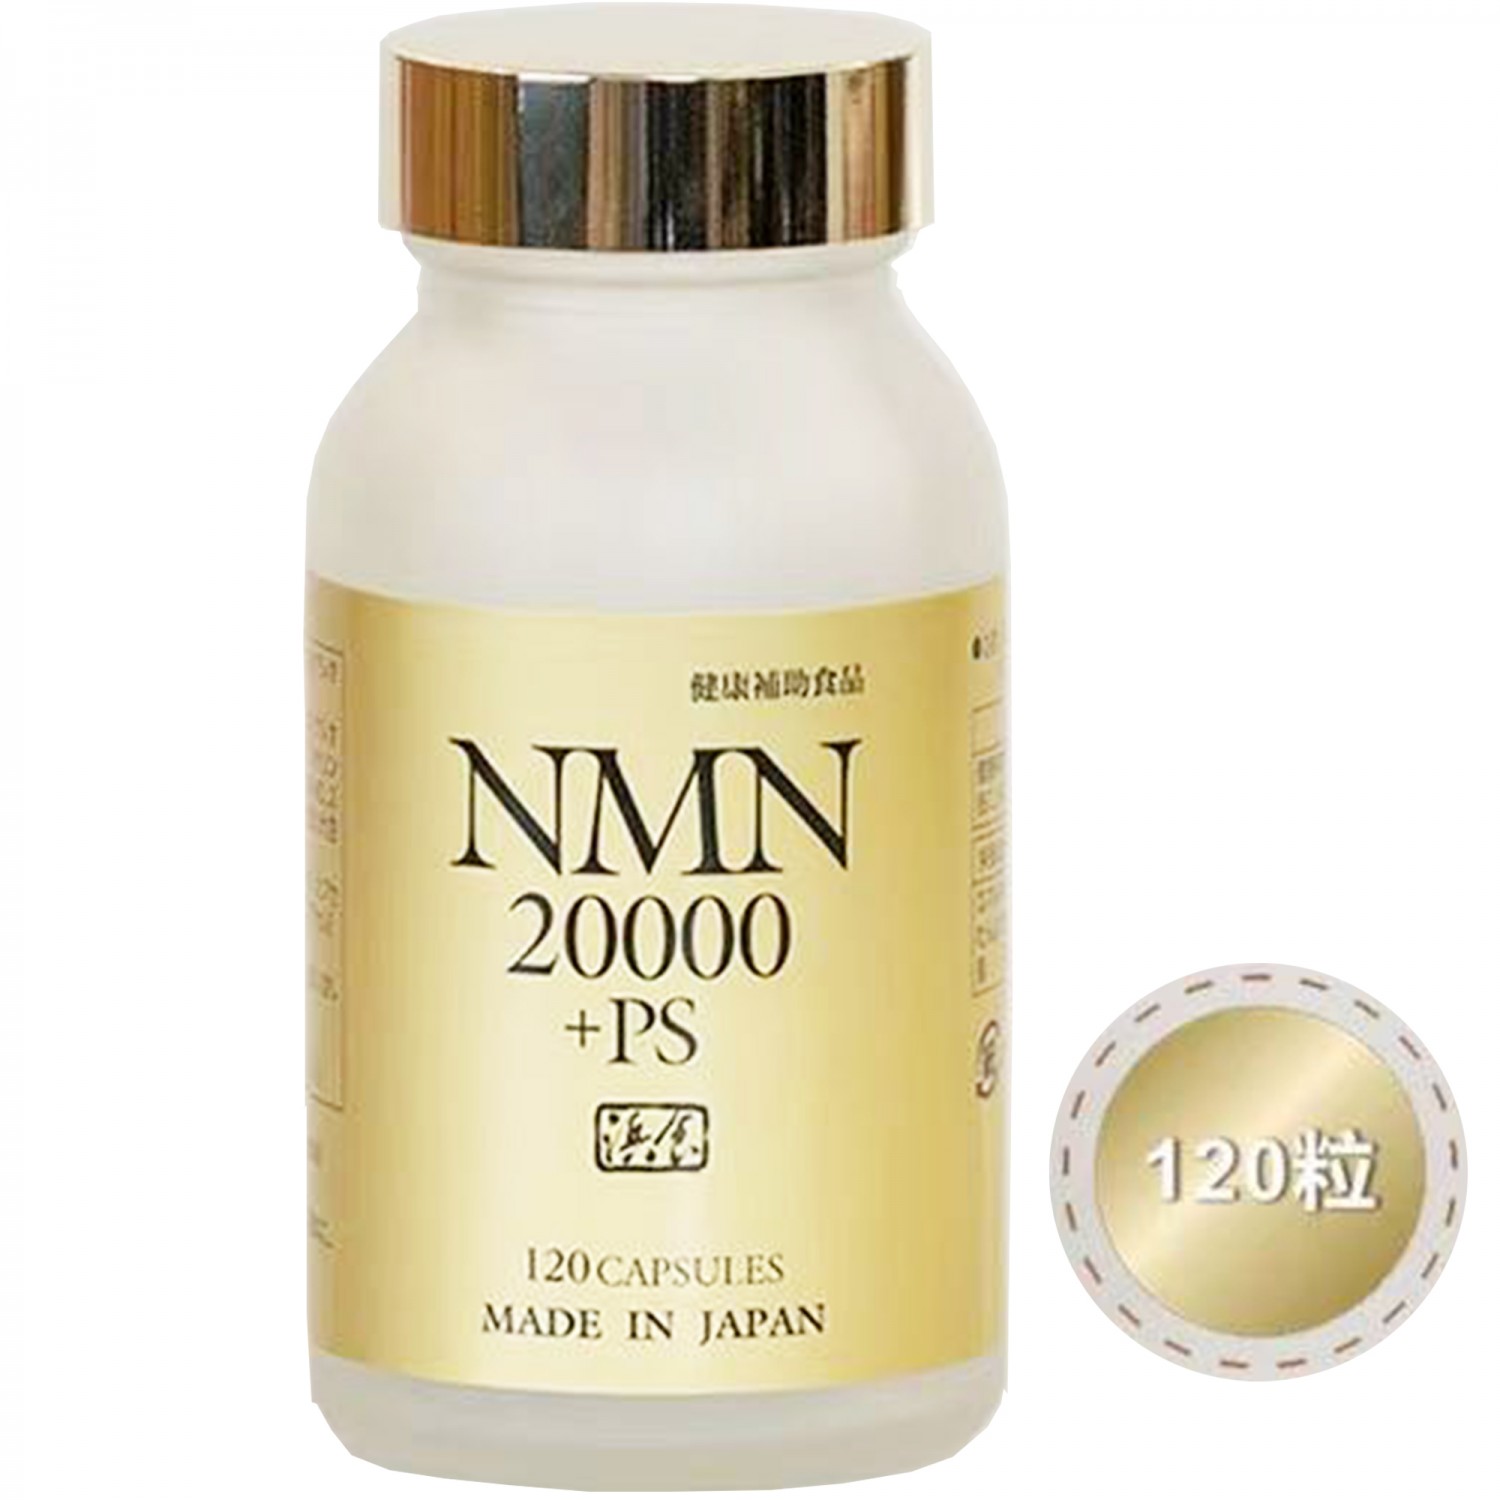 日本原裝NMN 20000 +PS |-晶準生技|德國第一大專業口服營養液-胺基酸系列|日本沖繩-褐藻醣膠-商品介紹